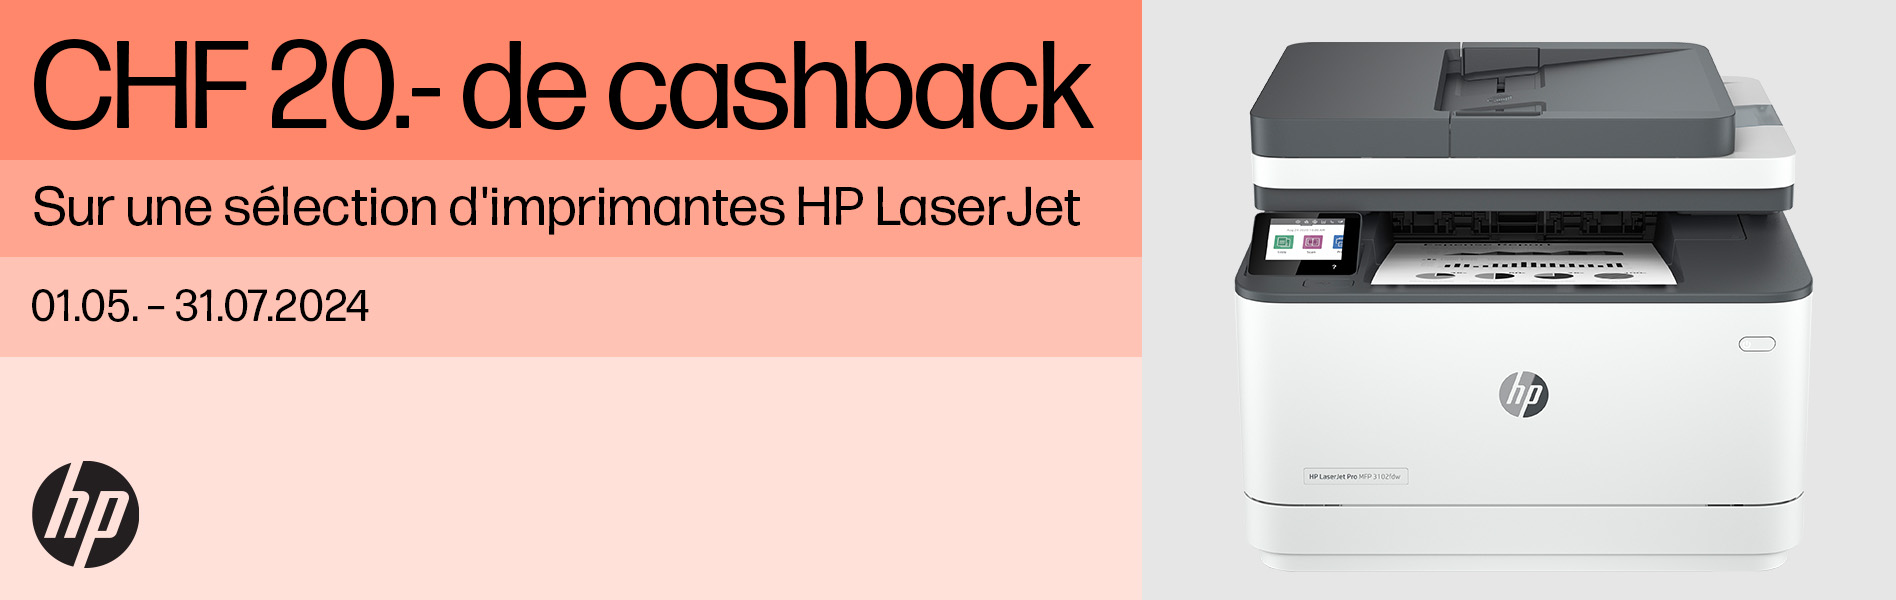 HP LaserJet Cashback